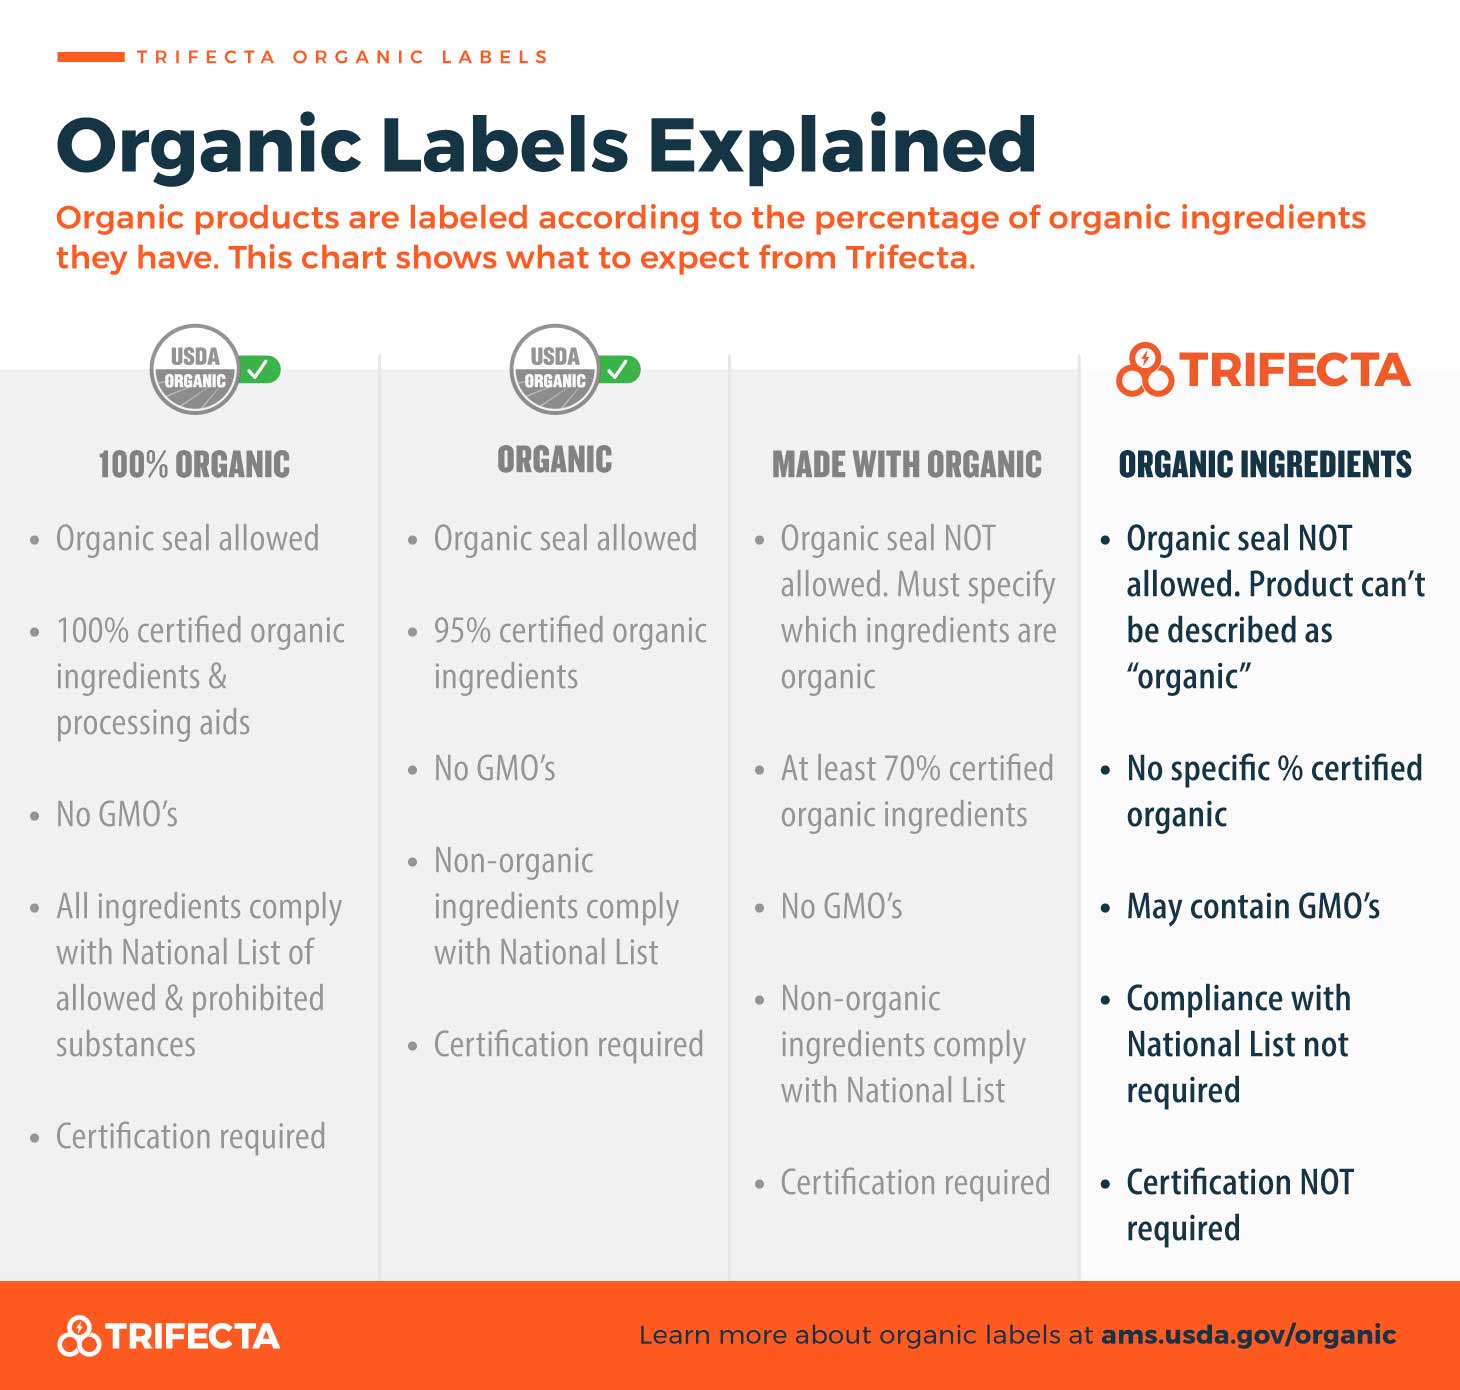 USDA-Organic-Trifecta-Explainer-2X-1